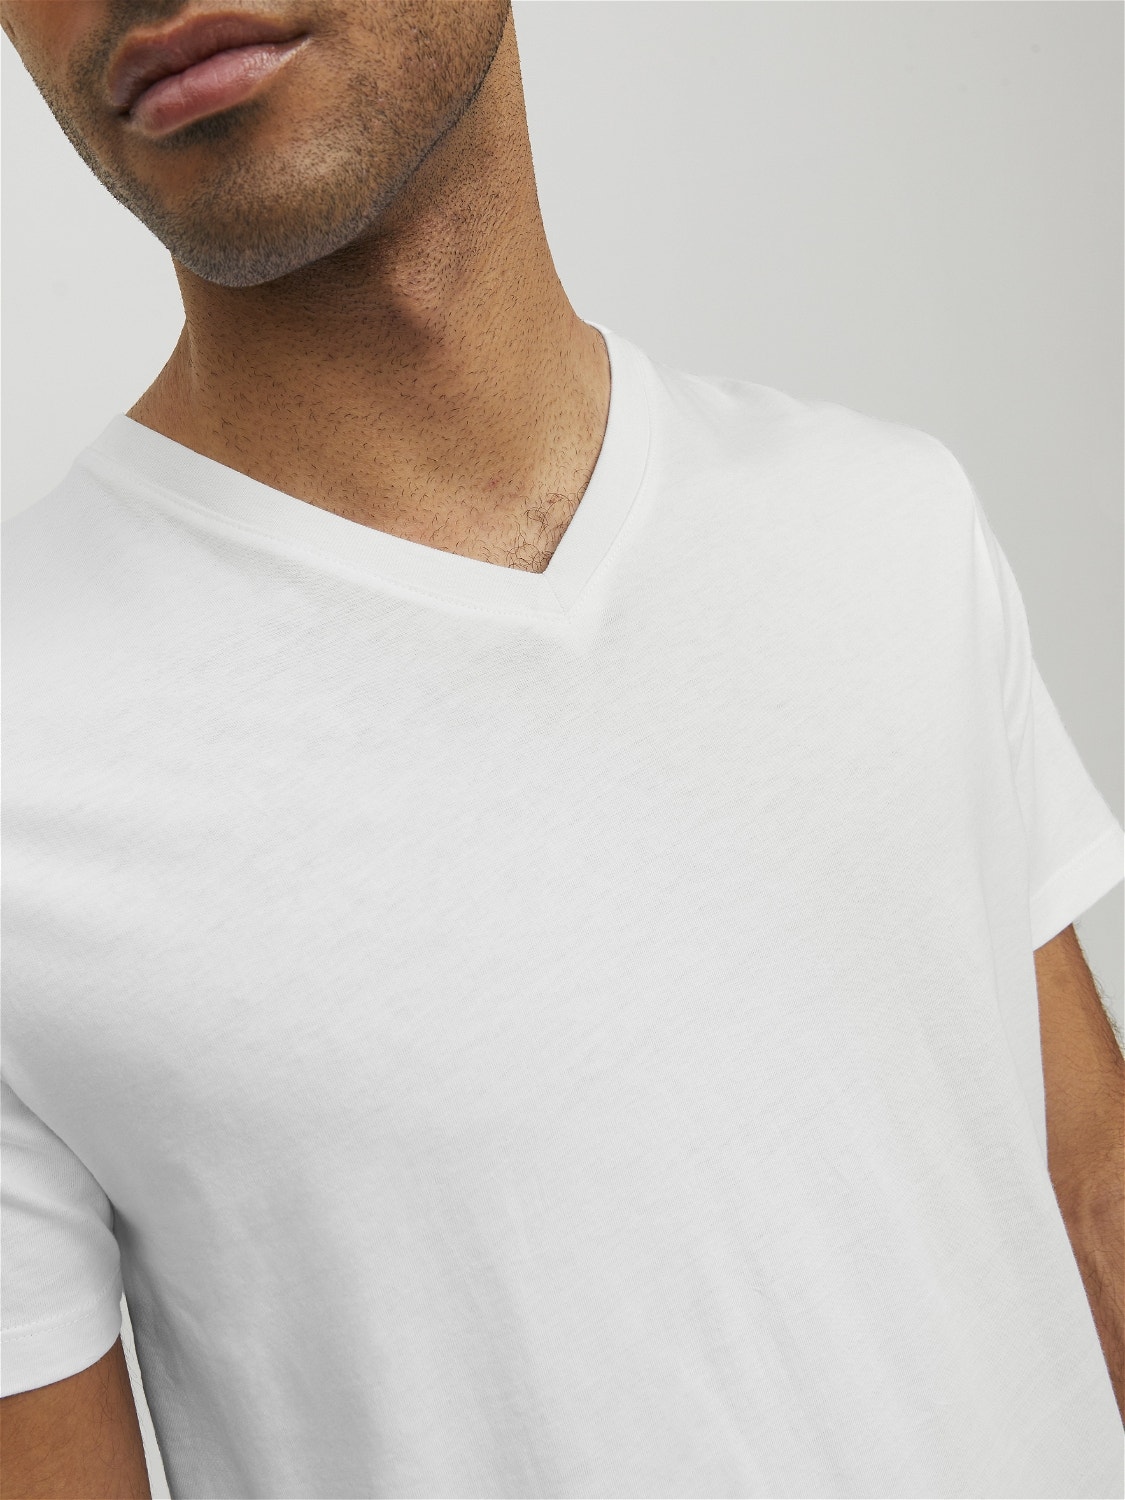 Camiseta Liso Cuello en V, Blanco